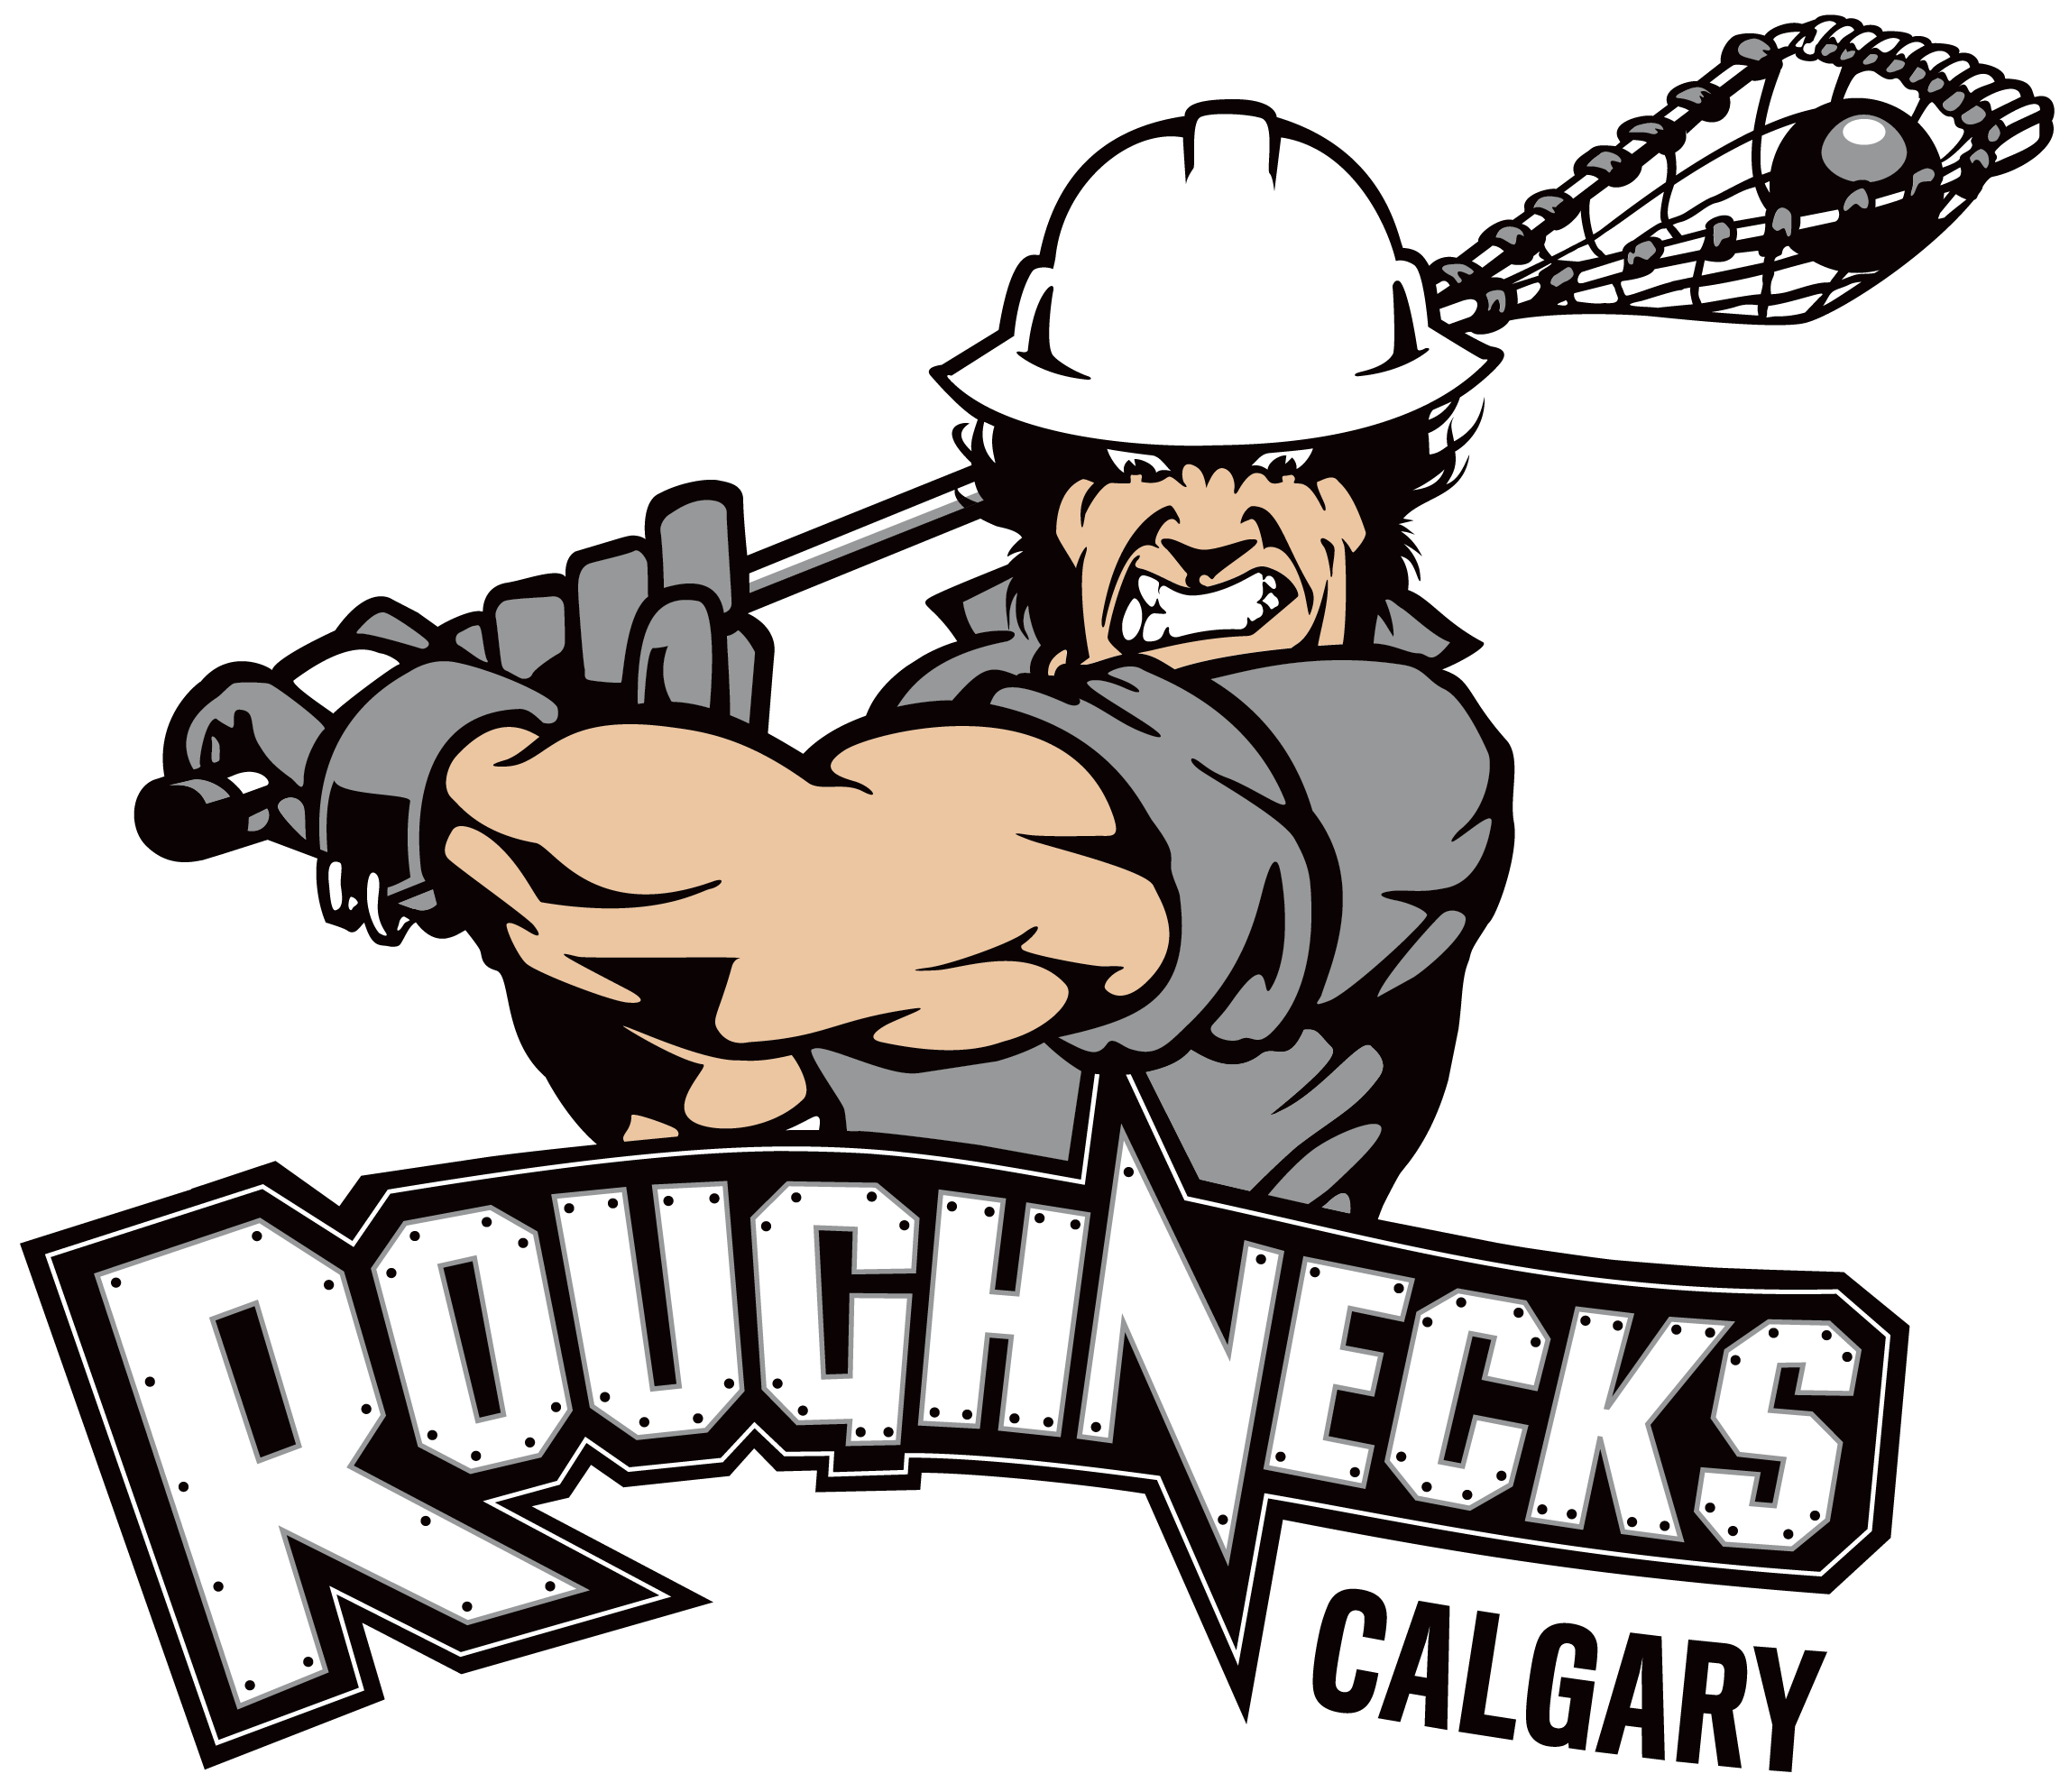 Calgary Roughnecks